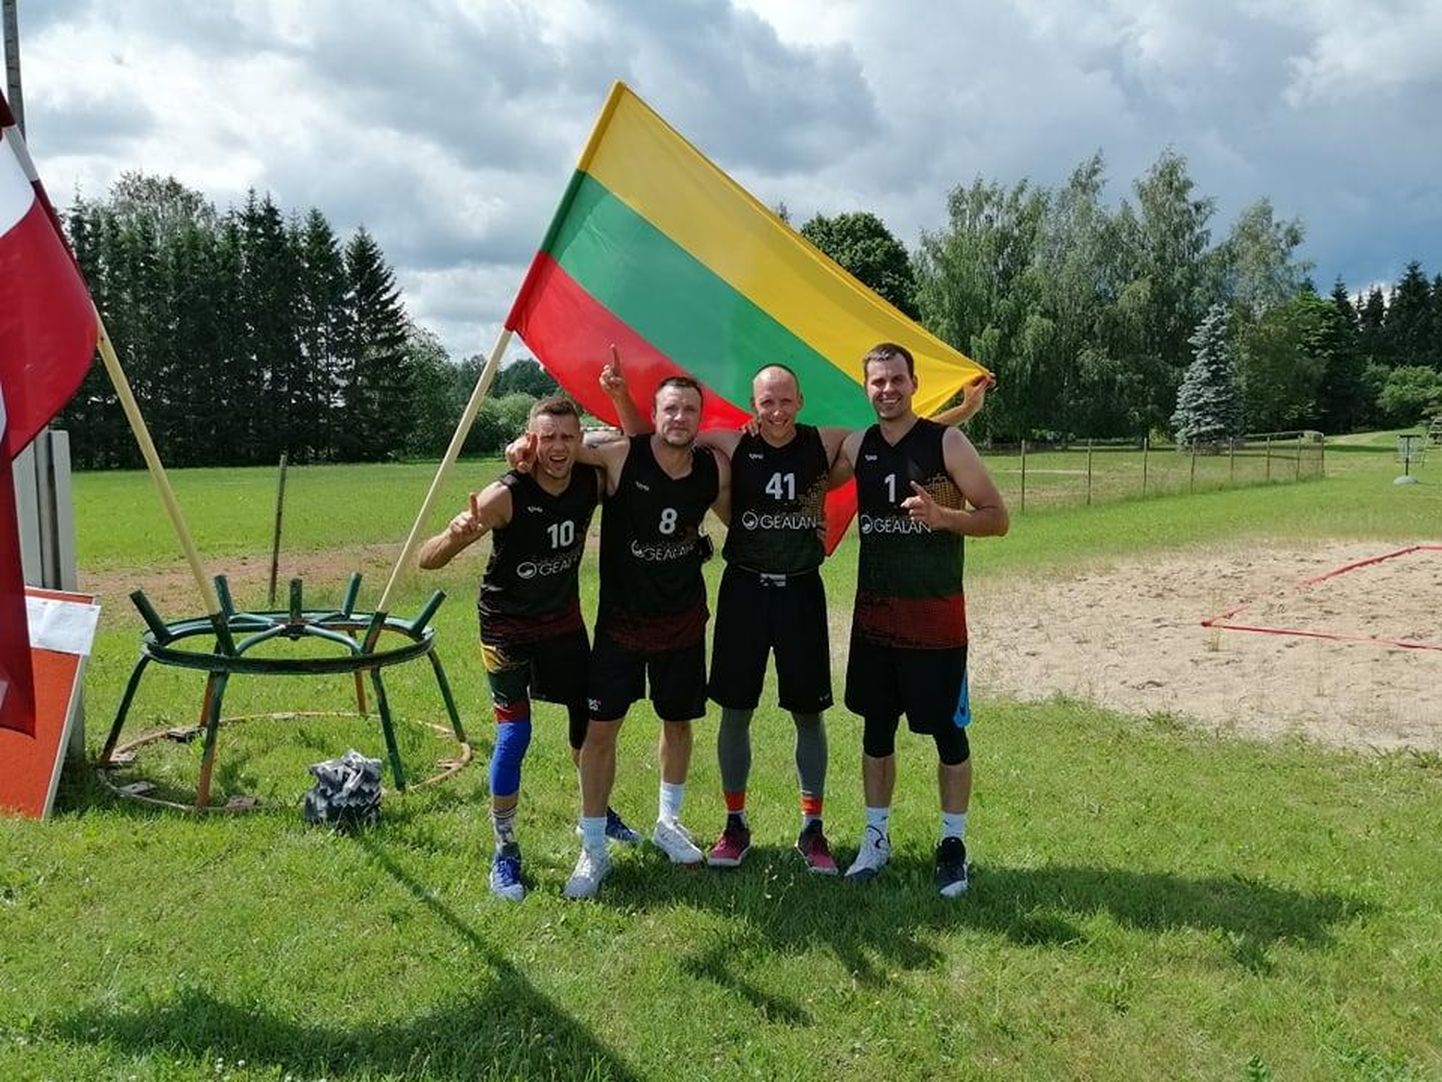 Eelmisel laupäeval Kolga-Jaani põhikooli staadionil asetleidnud Eesti meistrivõistluste etapilt 3 x 3 tänavakorvpallis viis võidu koju Leedu meeskond Gealan Baltic.